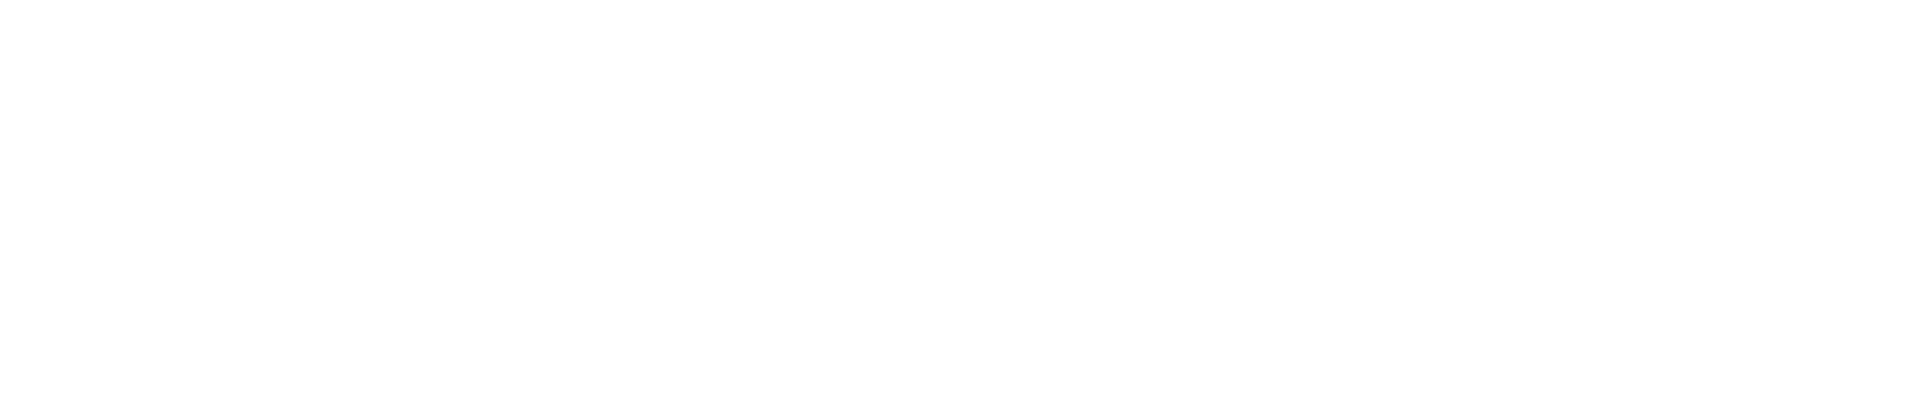 rnm_logo_transparent